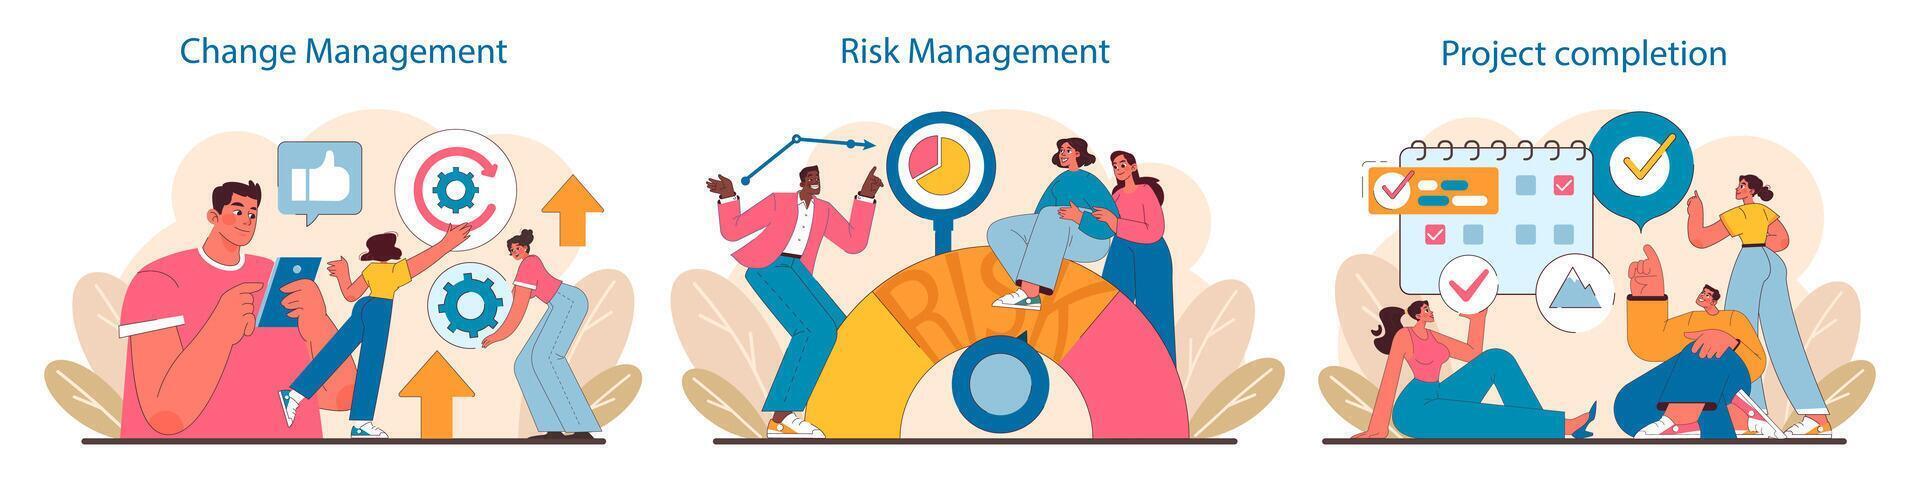 projekt livscykel uppsättning. adaptiv strategier i förändra förvaltning, Proaktiv risk bedömning, och fest projekt komplettering. vektor